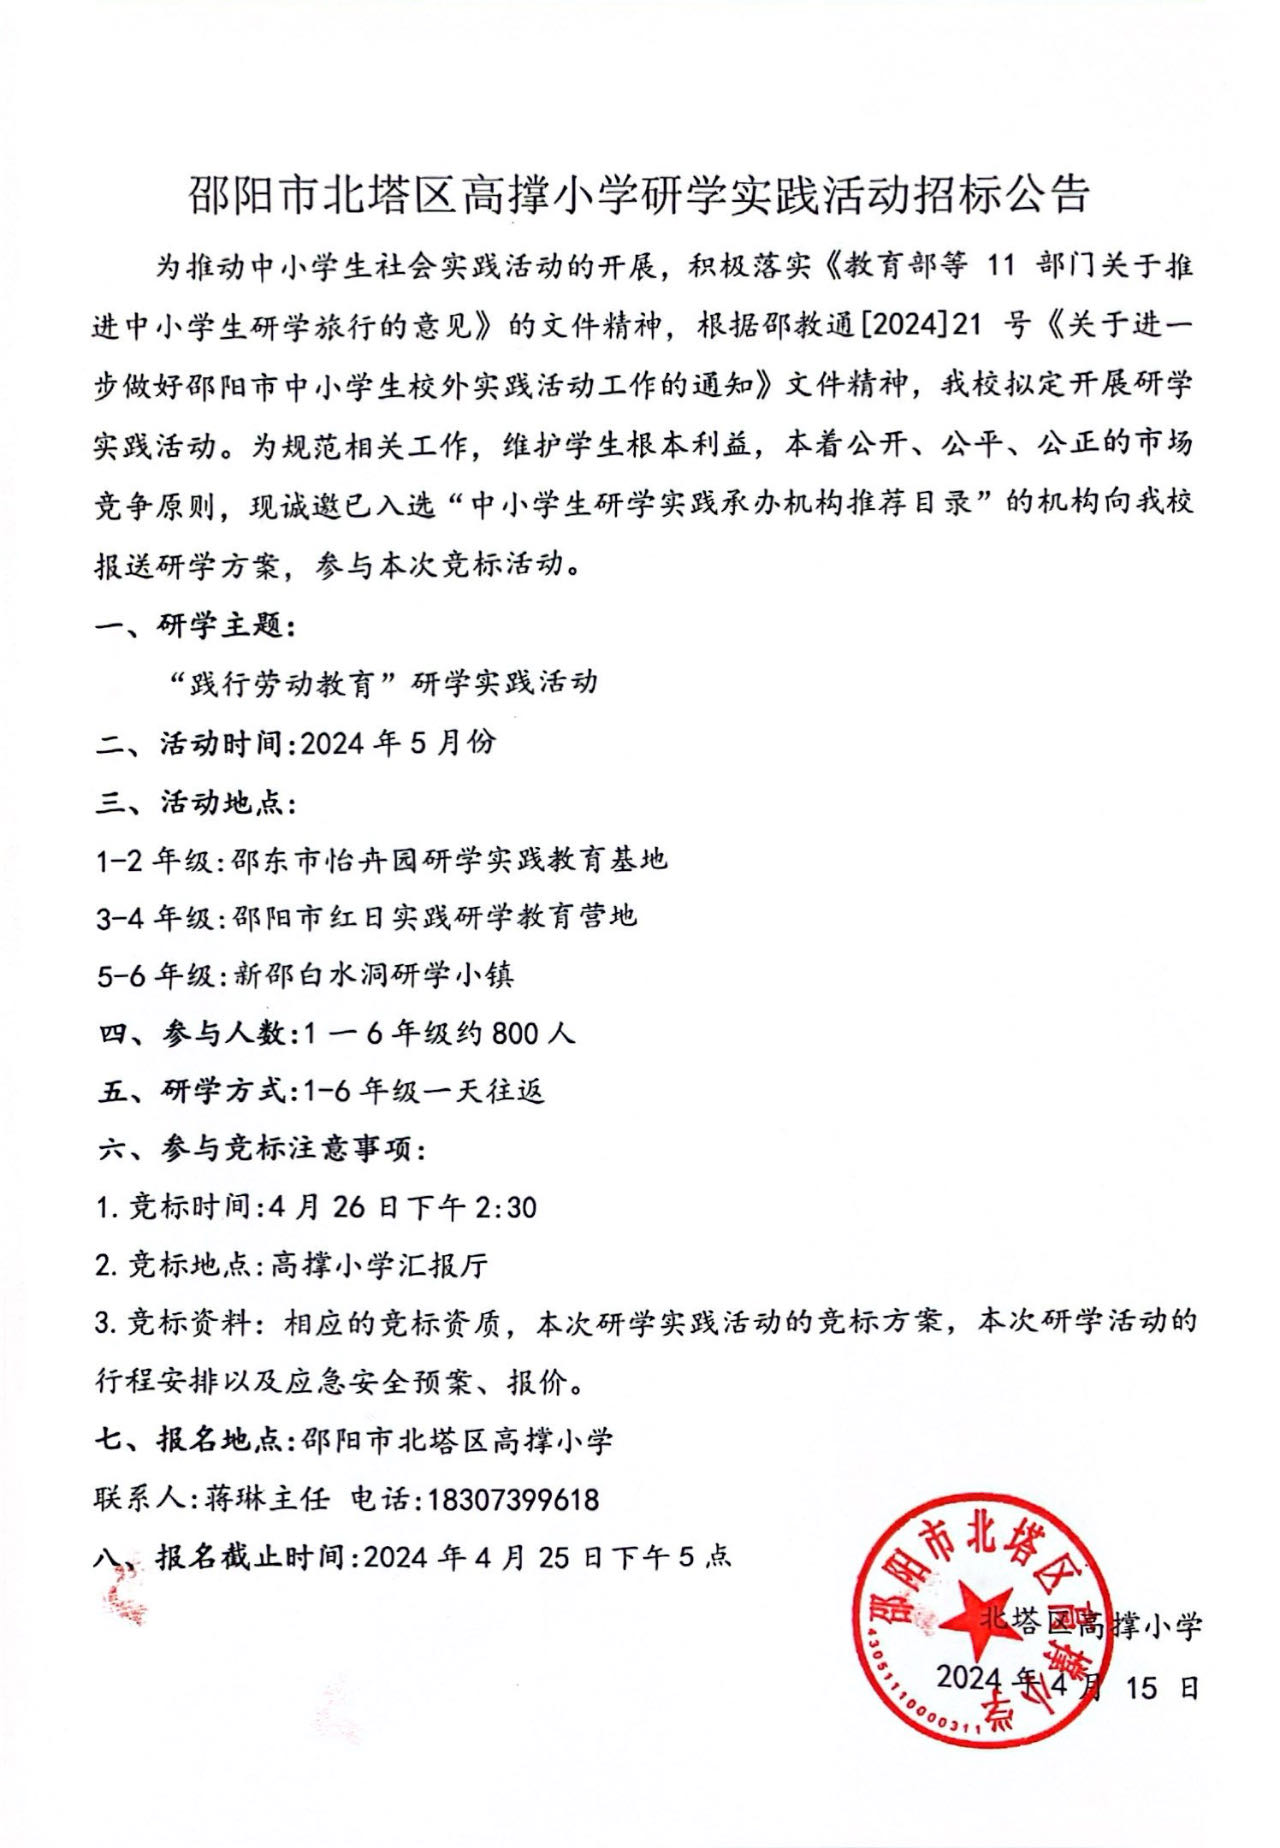 邵阳市北塔区高撑小学研学实践活动招标公告(图1)